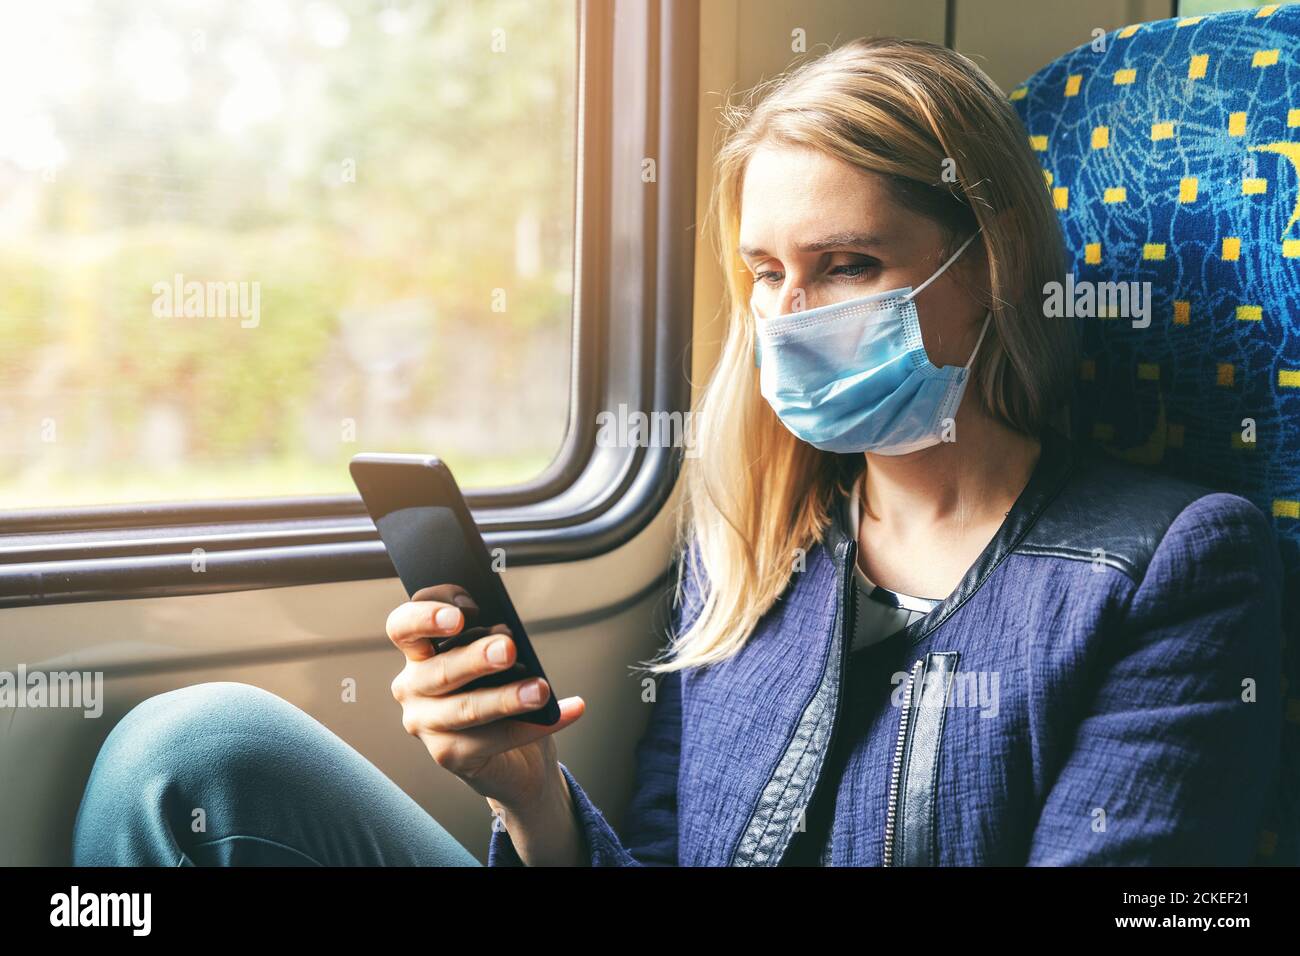 Junge Frau mit Gesichtsmaske mit Handy im Zug. Sicherheit im öffentlichen Verkehr Stockfoto